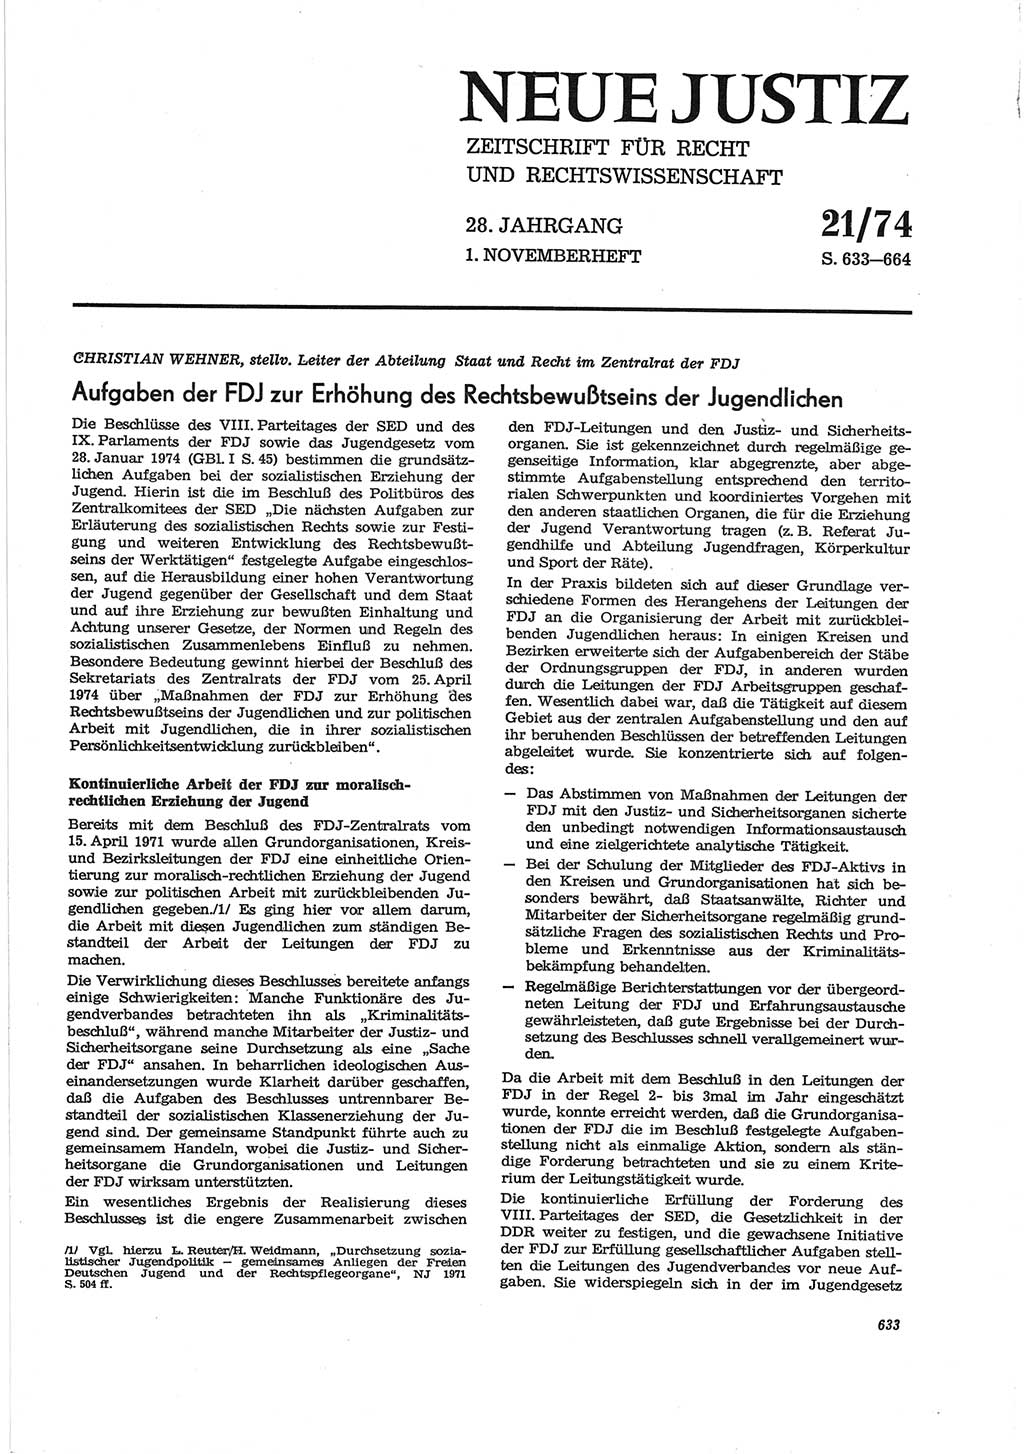 Neue Justiz (NJ), Zeitschrift für Recht und Rechtswissenschaft [Deutsche Demokratische Republik (DDR)], 28. Jahrgang 1974, Seite 633 (NJ DDR 1974, S. 633)